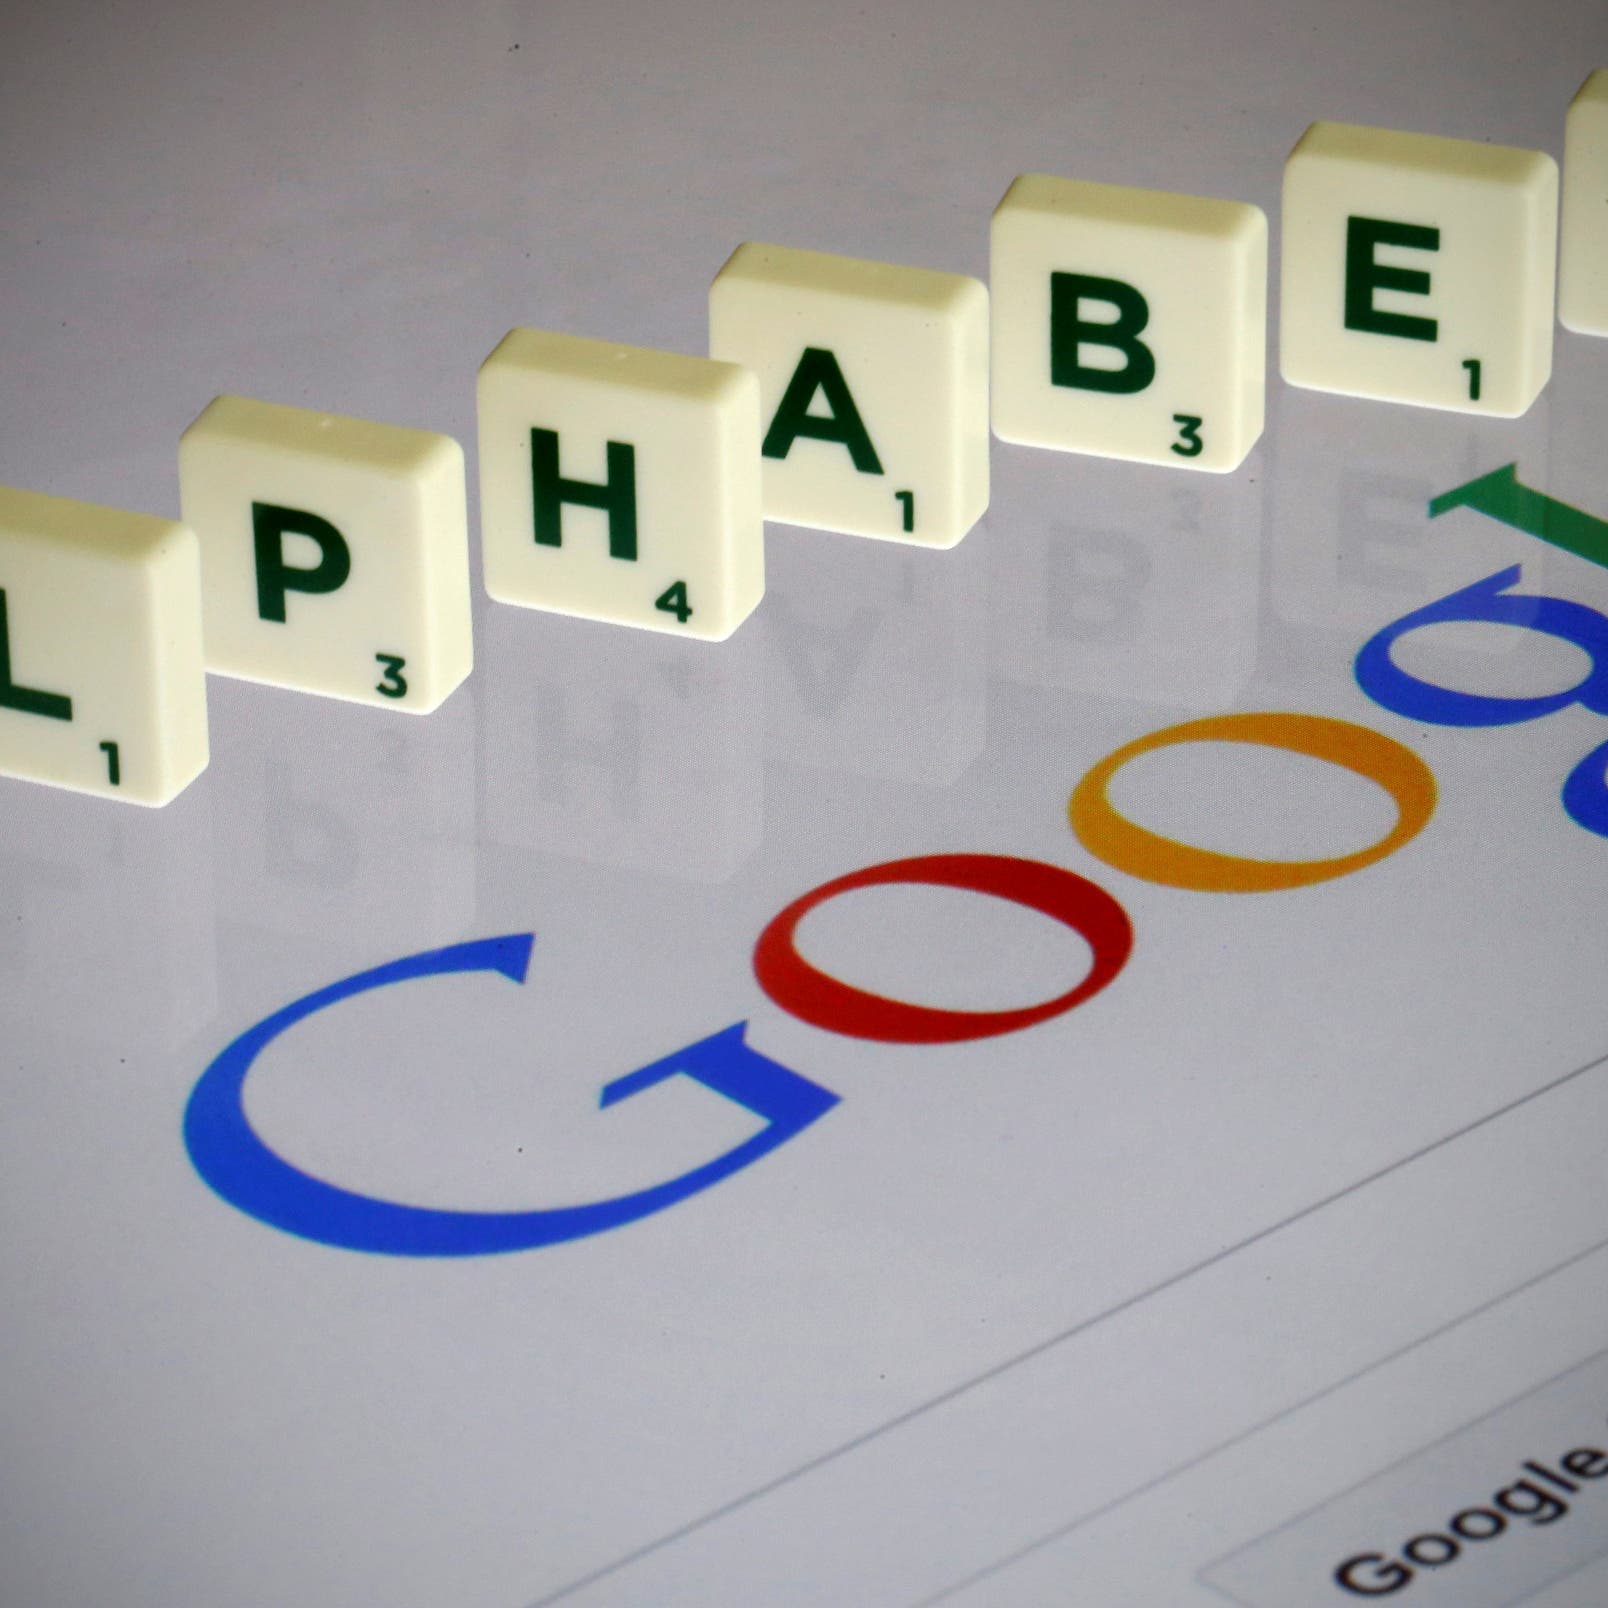 الشركة الأم لـ"غوغل" تخسر 215 مليار دولار من قيمتها في أقل من شهر